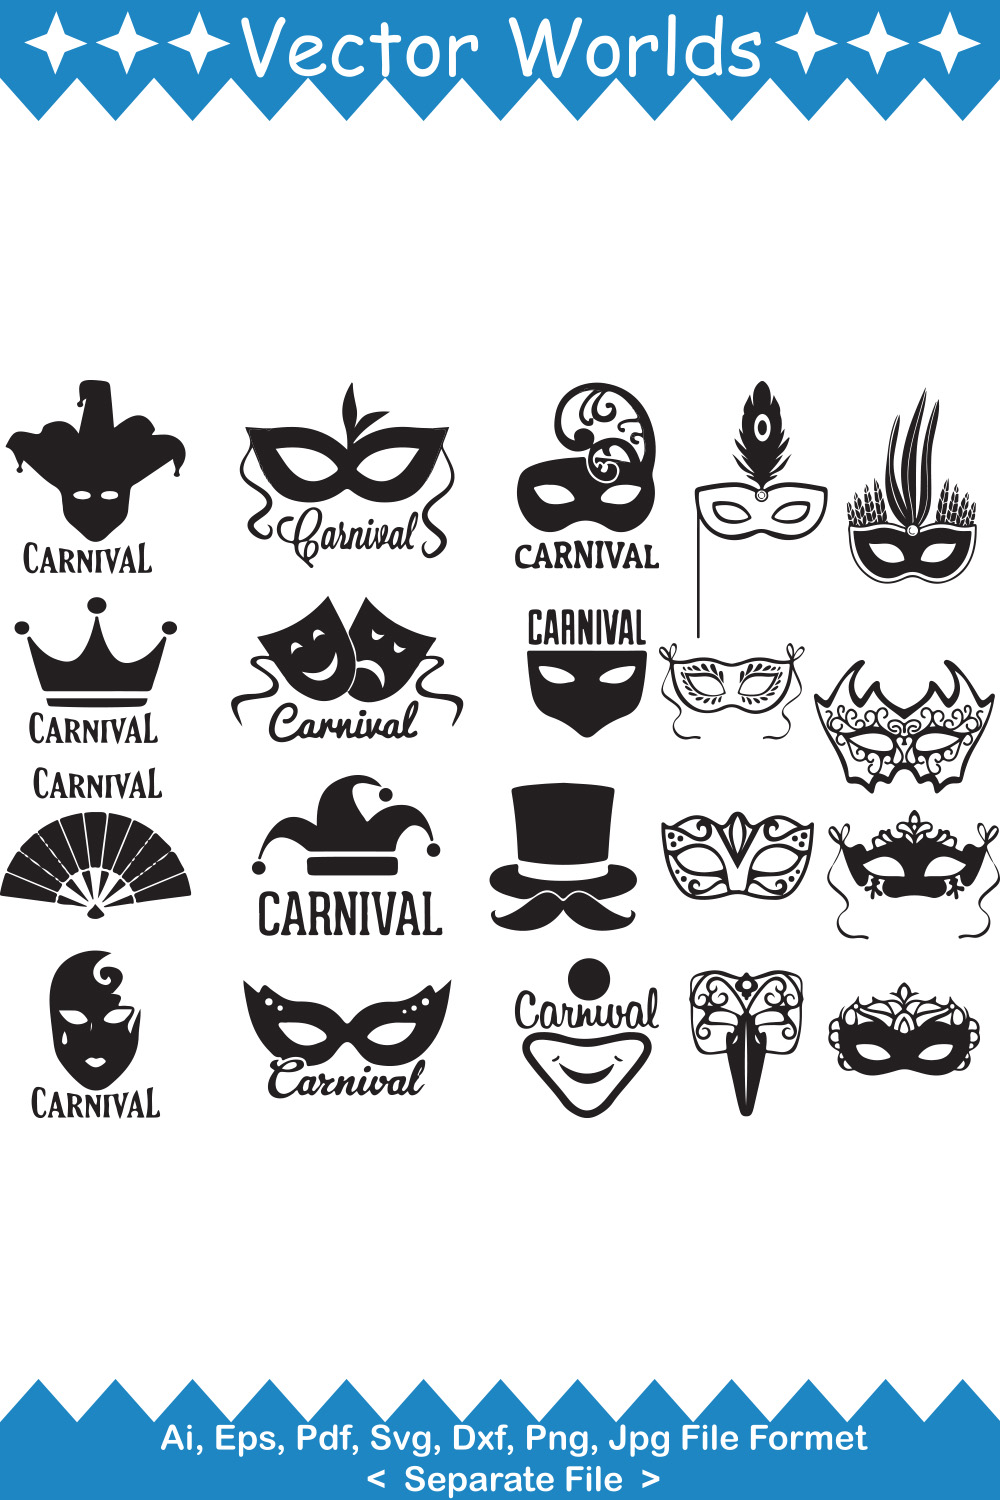 Carnival mask SVG Vector Design pinterest preview image.